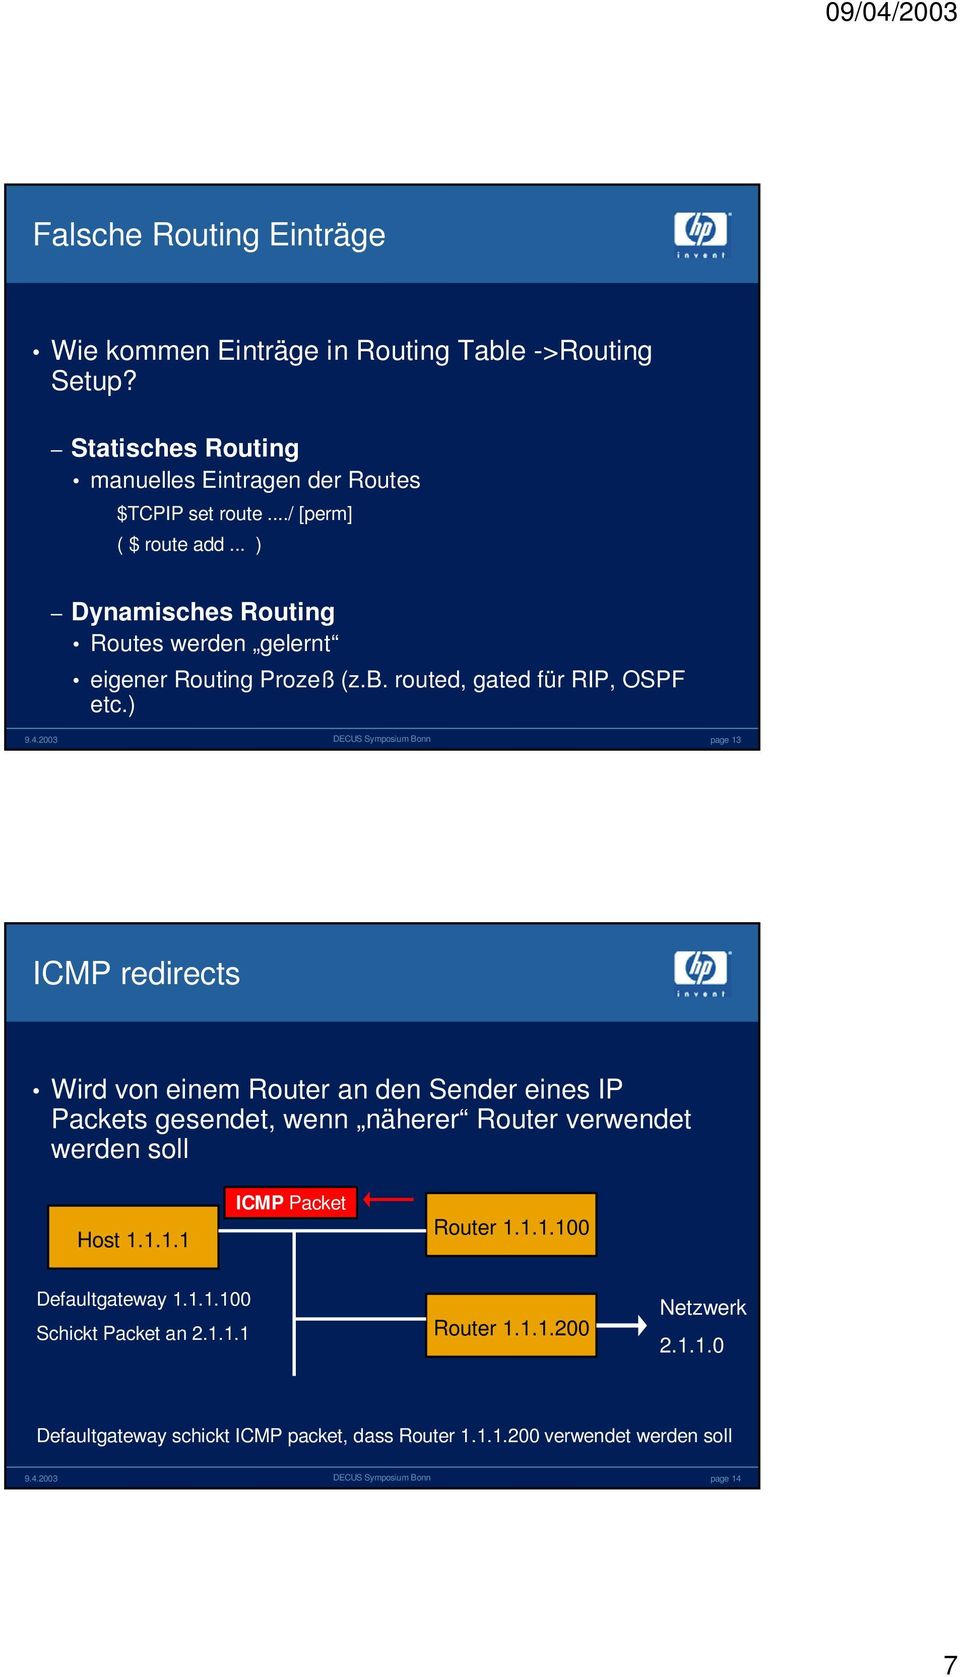 ) page 13 ICMP redirects Wird von einem Router an den Sender eines IP Packets gesendet, wenn näherer Router verwendet werden soll Host 1.1.1.1 ICMP Packet Router 1.